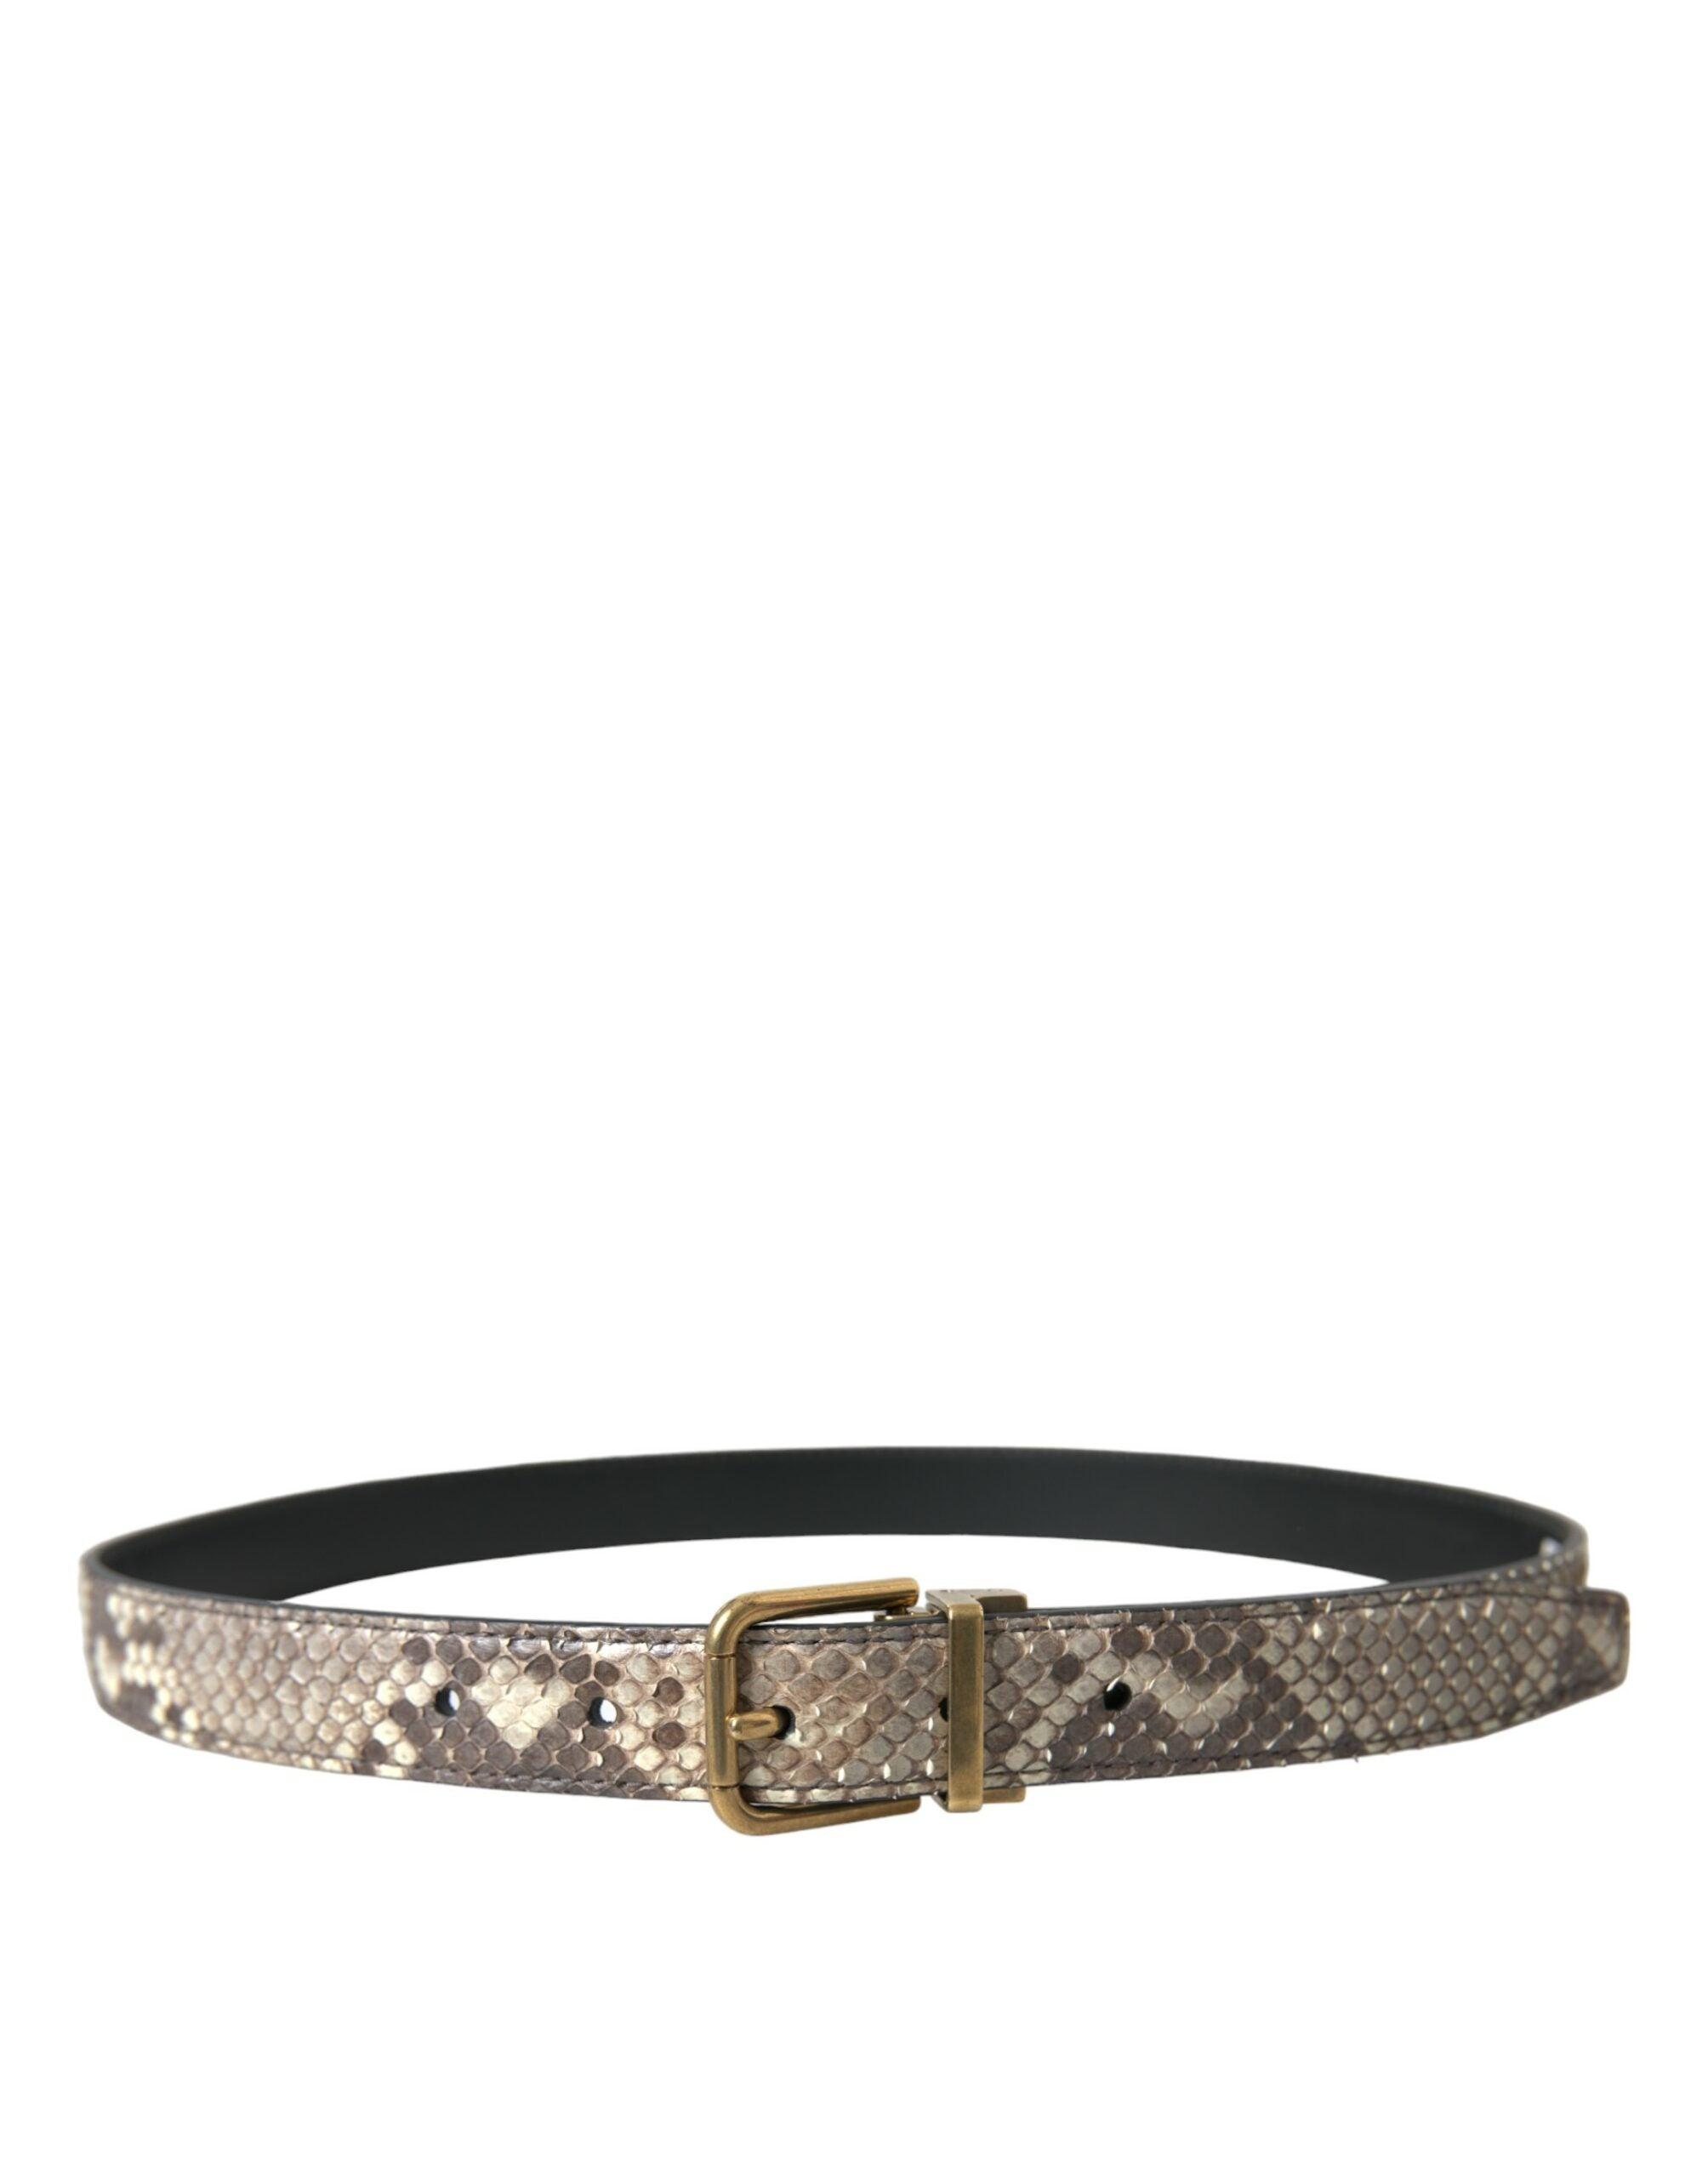 Elegant Italian Leather Belt - Divitiae Glamour